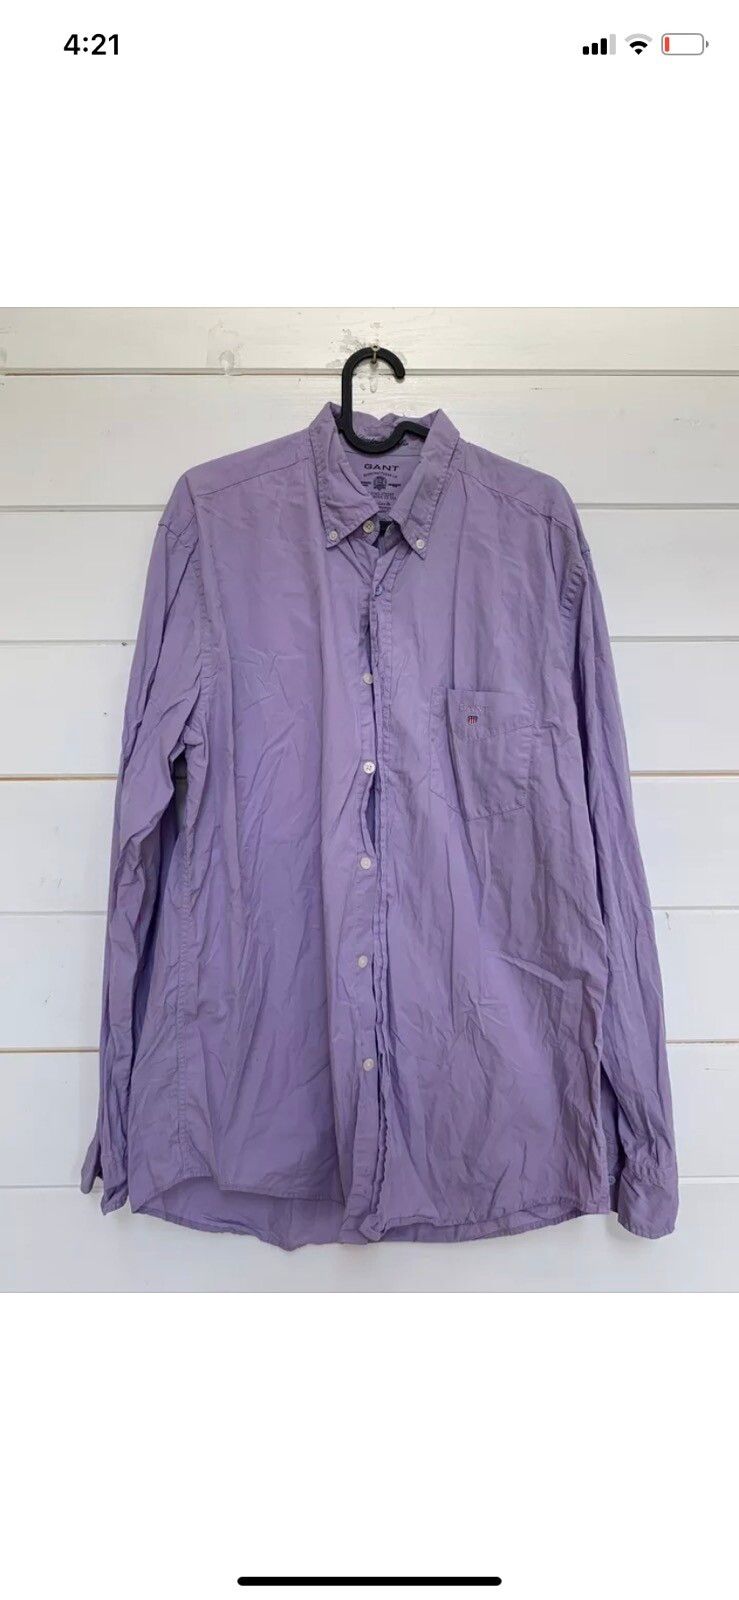 Gant GANT Shirt Purple Cotton Slim Fit Spectrum Poplin Size L Size US L / EU 52-54 / 3 - 1 Preview